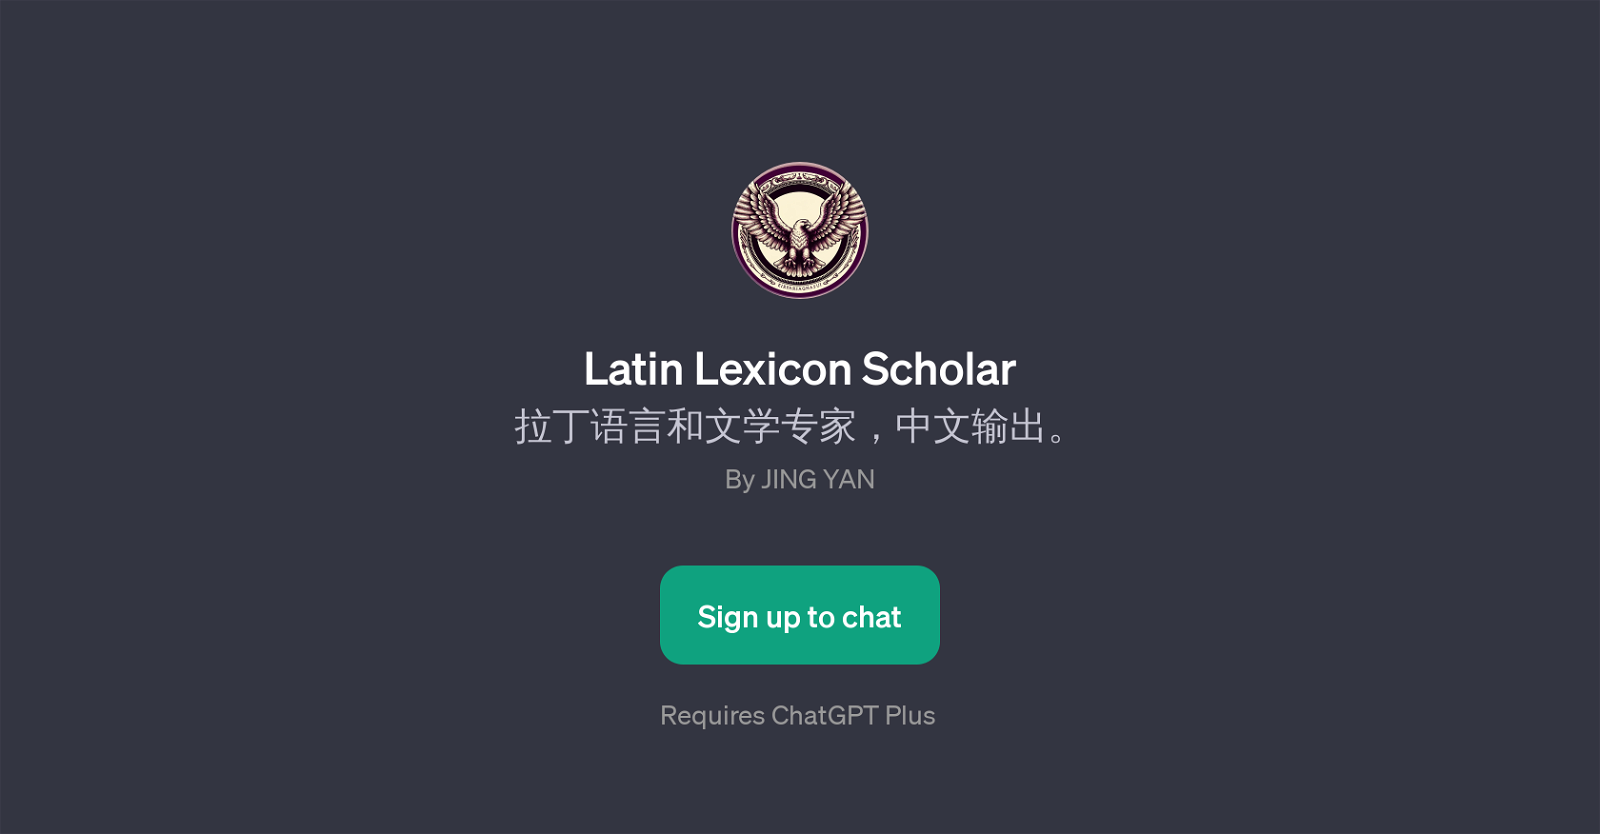 Latin Lexicon Scholar website